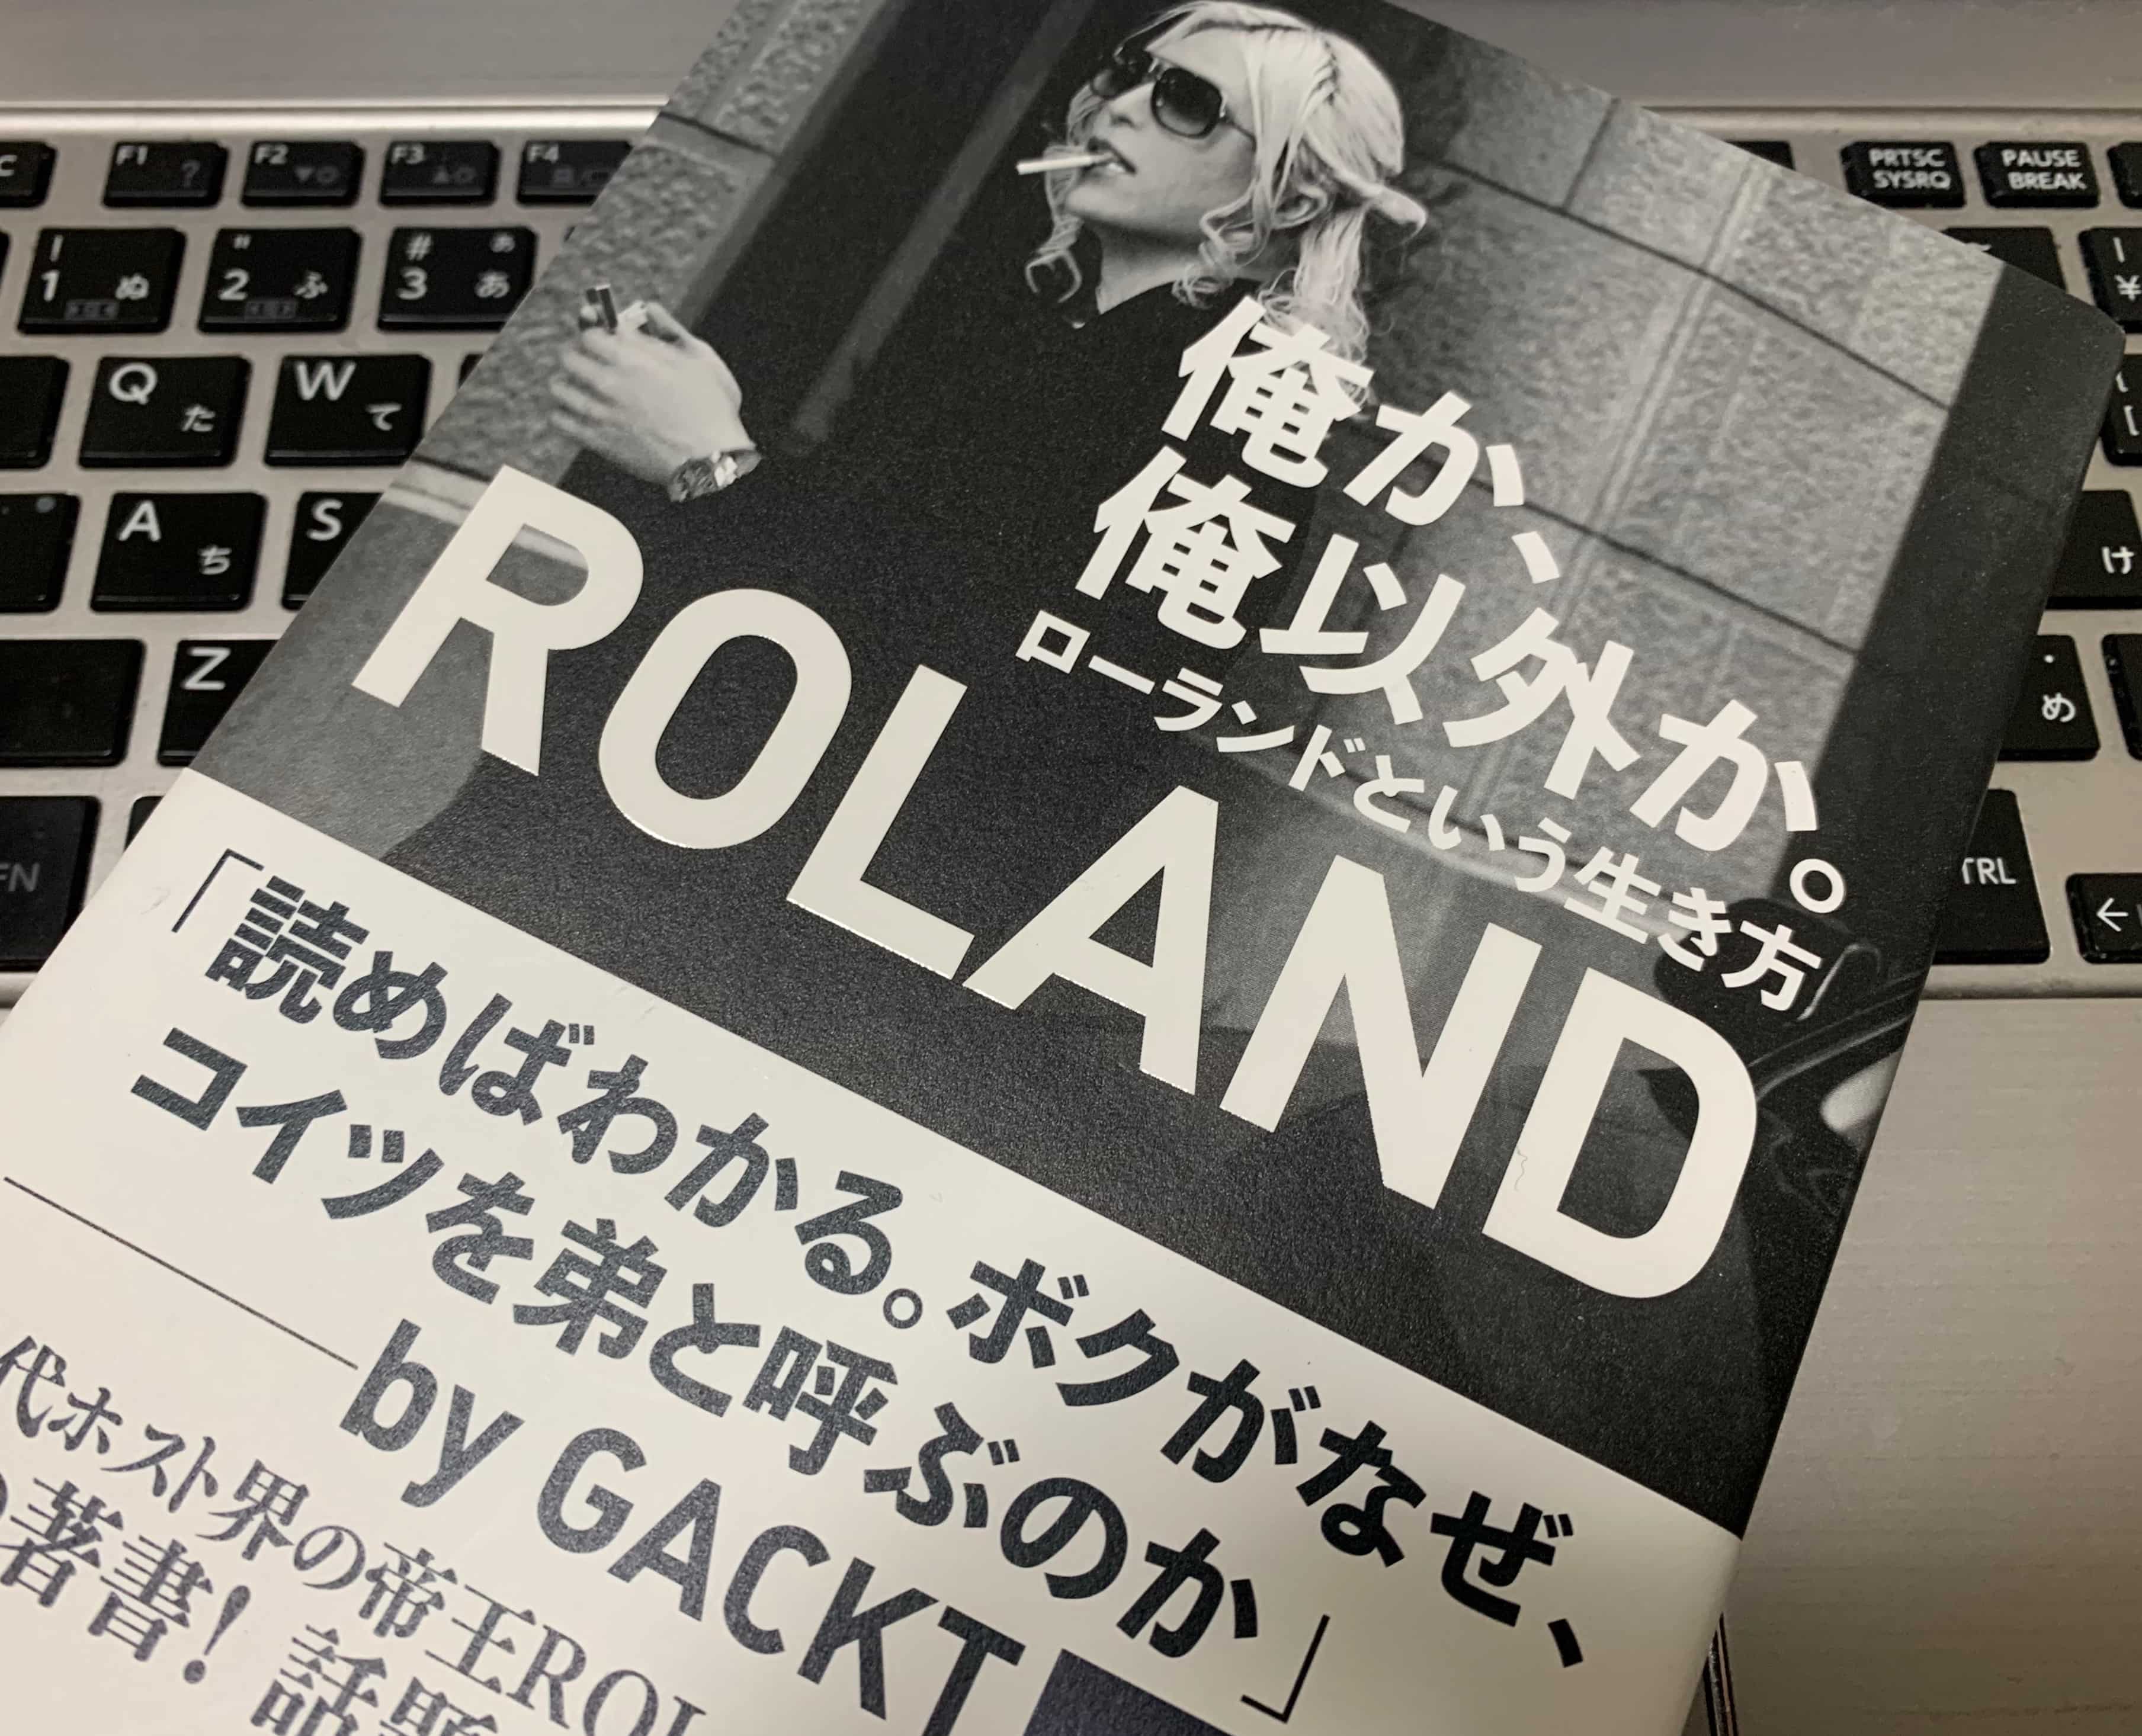 『俺か、俺以外か。 ローランドという生き方（ROLAND ）』本の内容は世の中のプロ意識を変える一冊